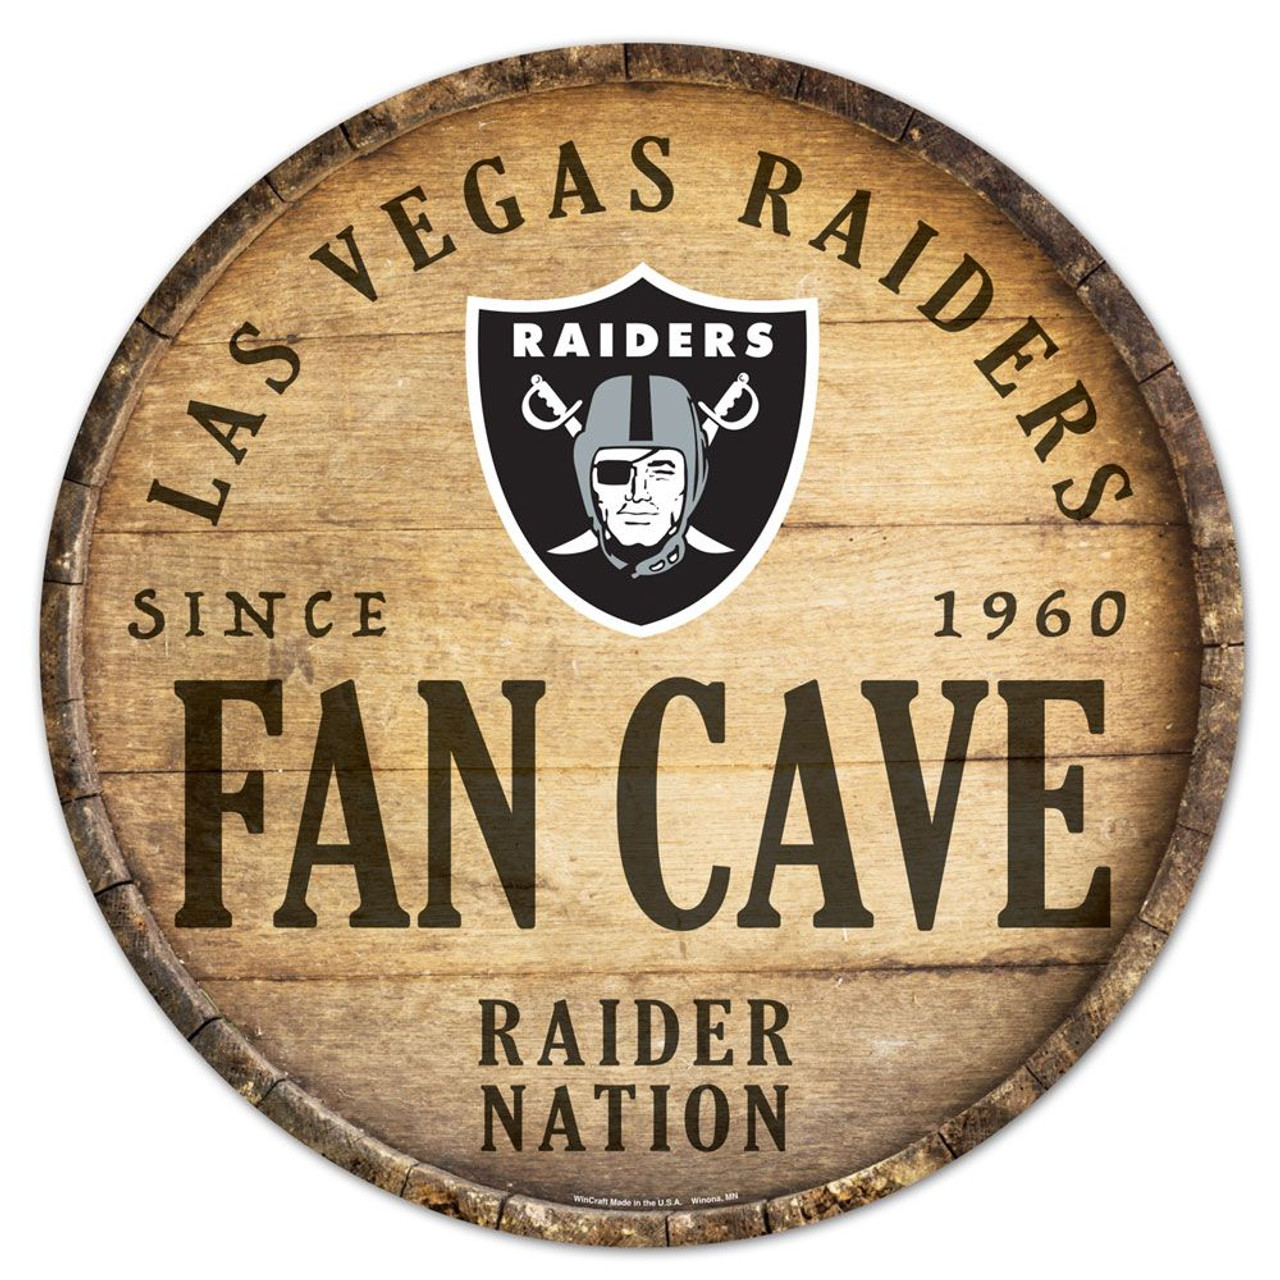 Las Vegas Raiders Gloves Sticker Vinyl Decal / Sticker 5 sizes!!